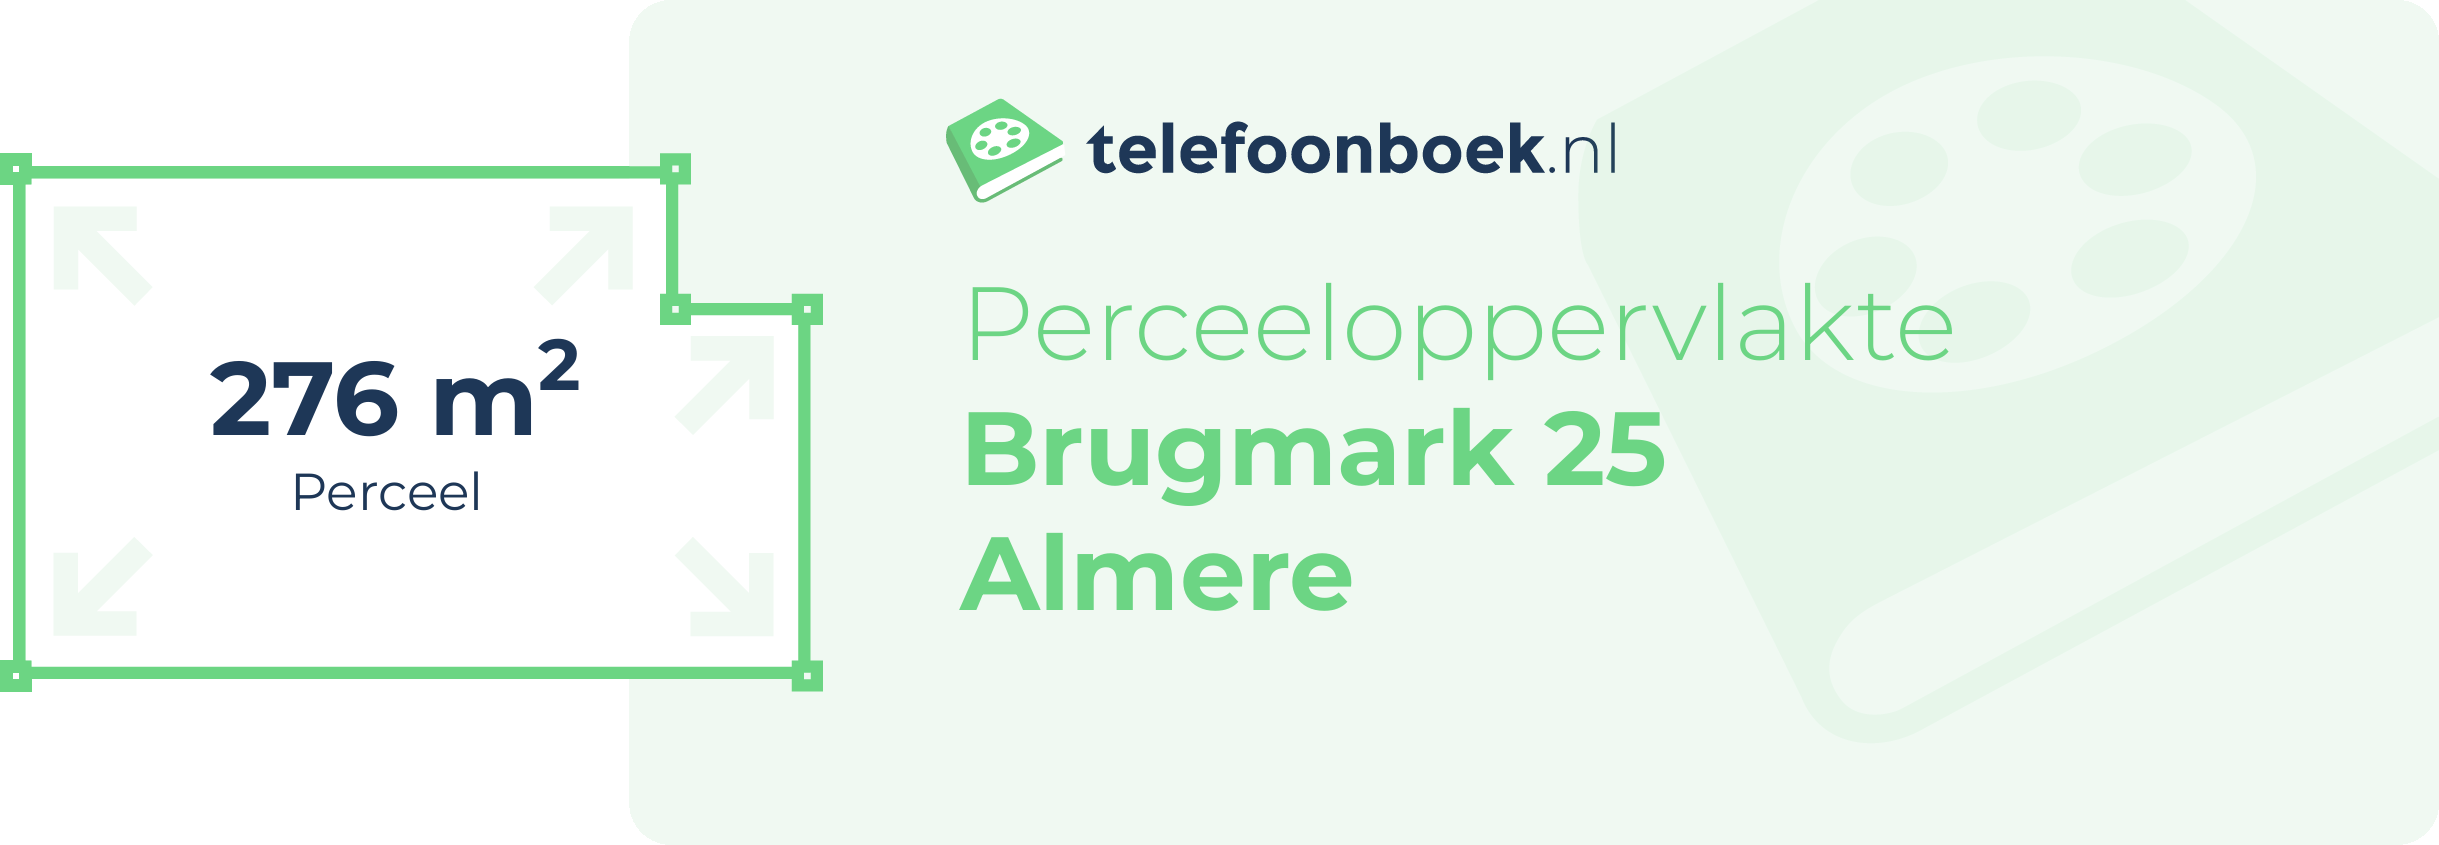 Perceeloppervlakte Brugmark 25 Almere